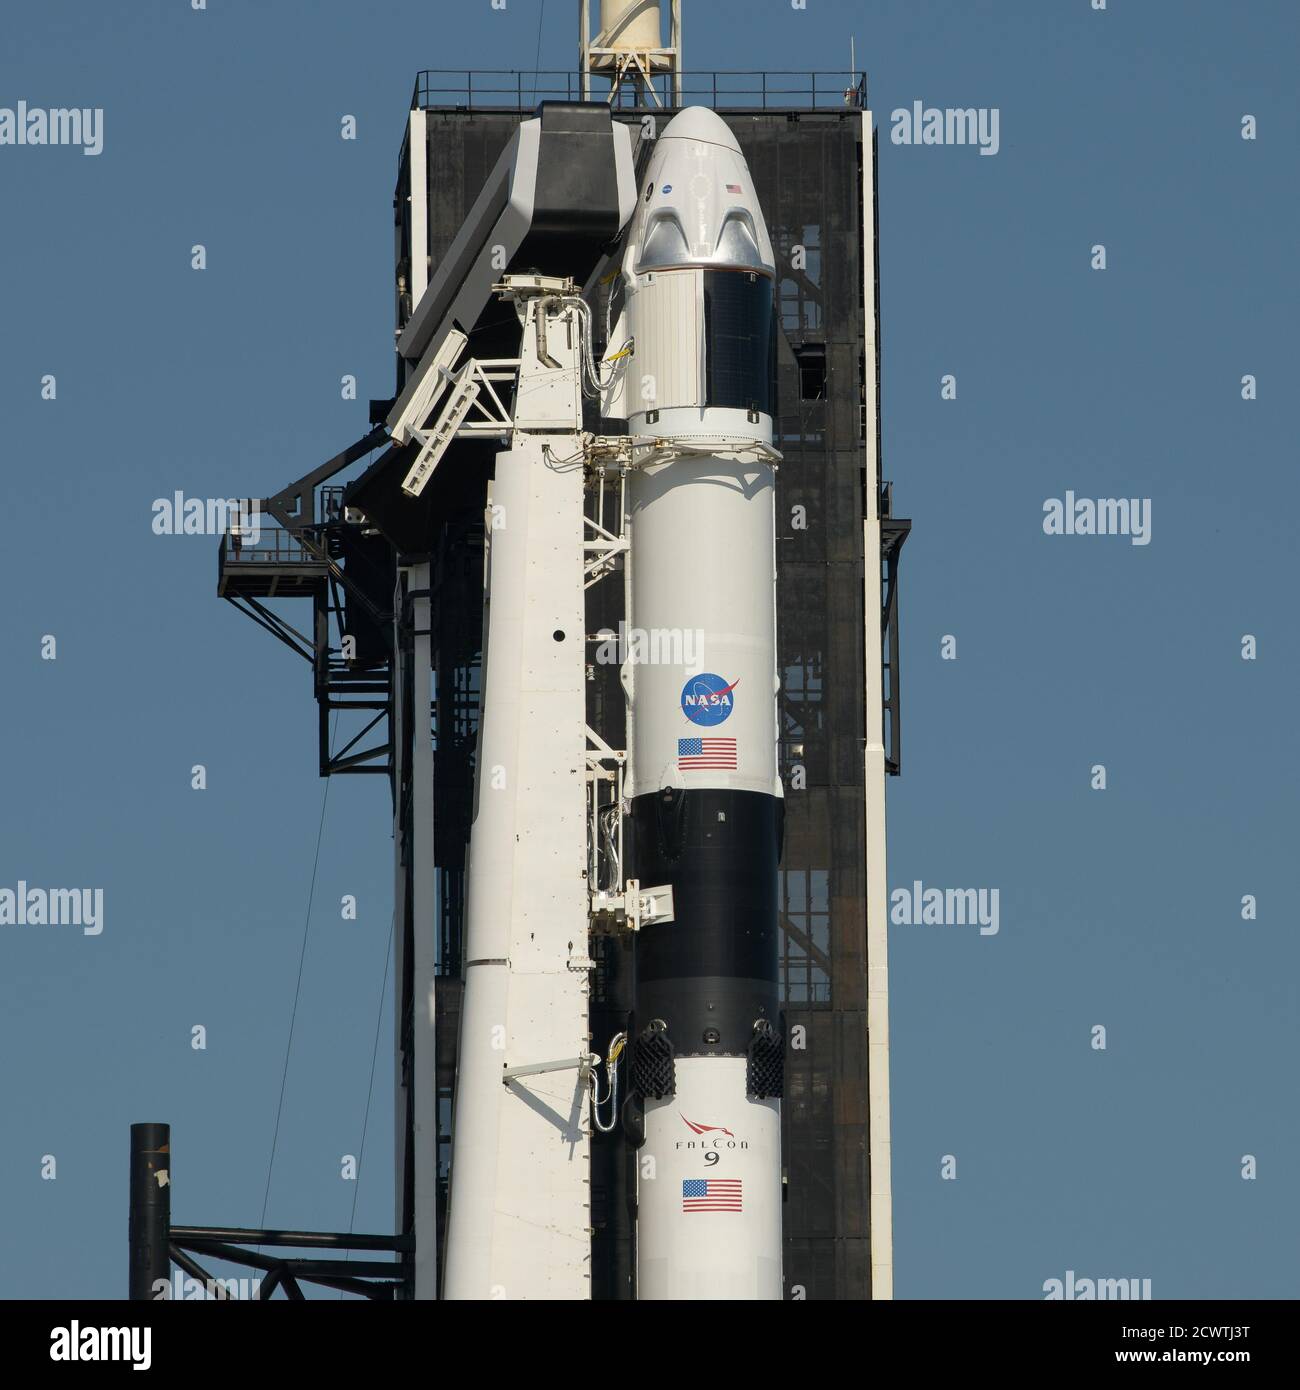 SpaceX Demo-2 Rollout EINE SpaceX Falcon 9 Rakete mit der Crew Dragon Raumsonde des Unternehmens an Bord wird gesehen, wie sie in eine vertikale Position auf der Startfläche am Launch Complex 39A angehoben wird, während die Vorbereitungen für die Demo-2 Mission weitergehen, Donnerstag, 21. Mai 2020, Im Kennedy Space Center der NASA in Florida. Die NASA SpaceX Demo-2 Mission ist der erste Start mit Astronauten der Raumsonde SpaceX Crew Dragon und Falcon 9 Rakete zur Internationalen Raumstation im Rahmen des Commercial Crew Program der Agentur. Der Flugtest wird als End-to-End-Demonstration von SpaceX Crew Transport s dienen Stockfoto